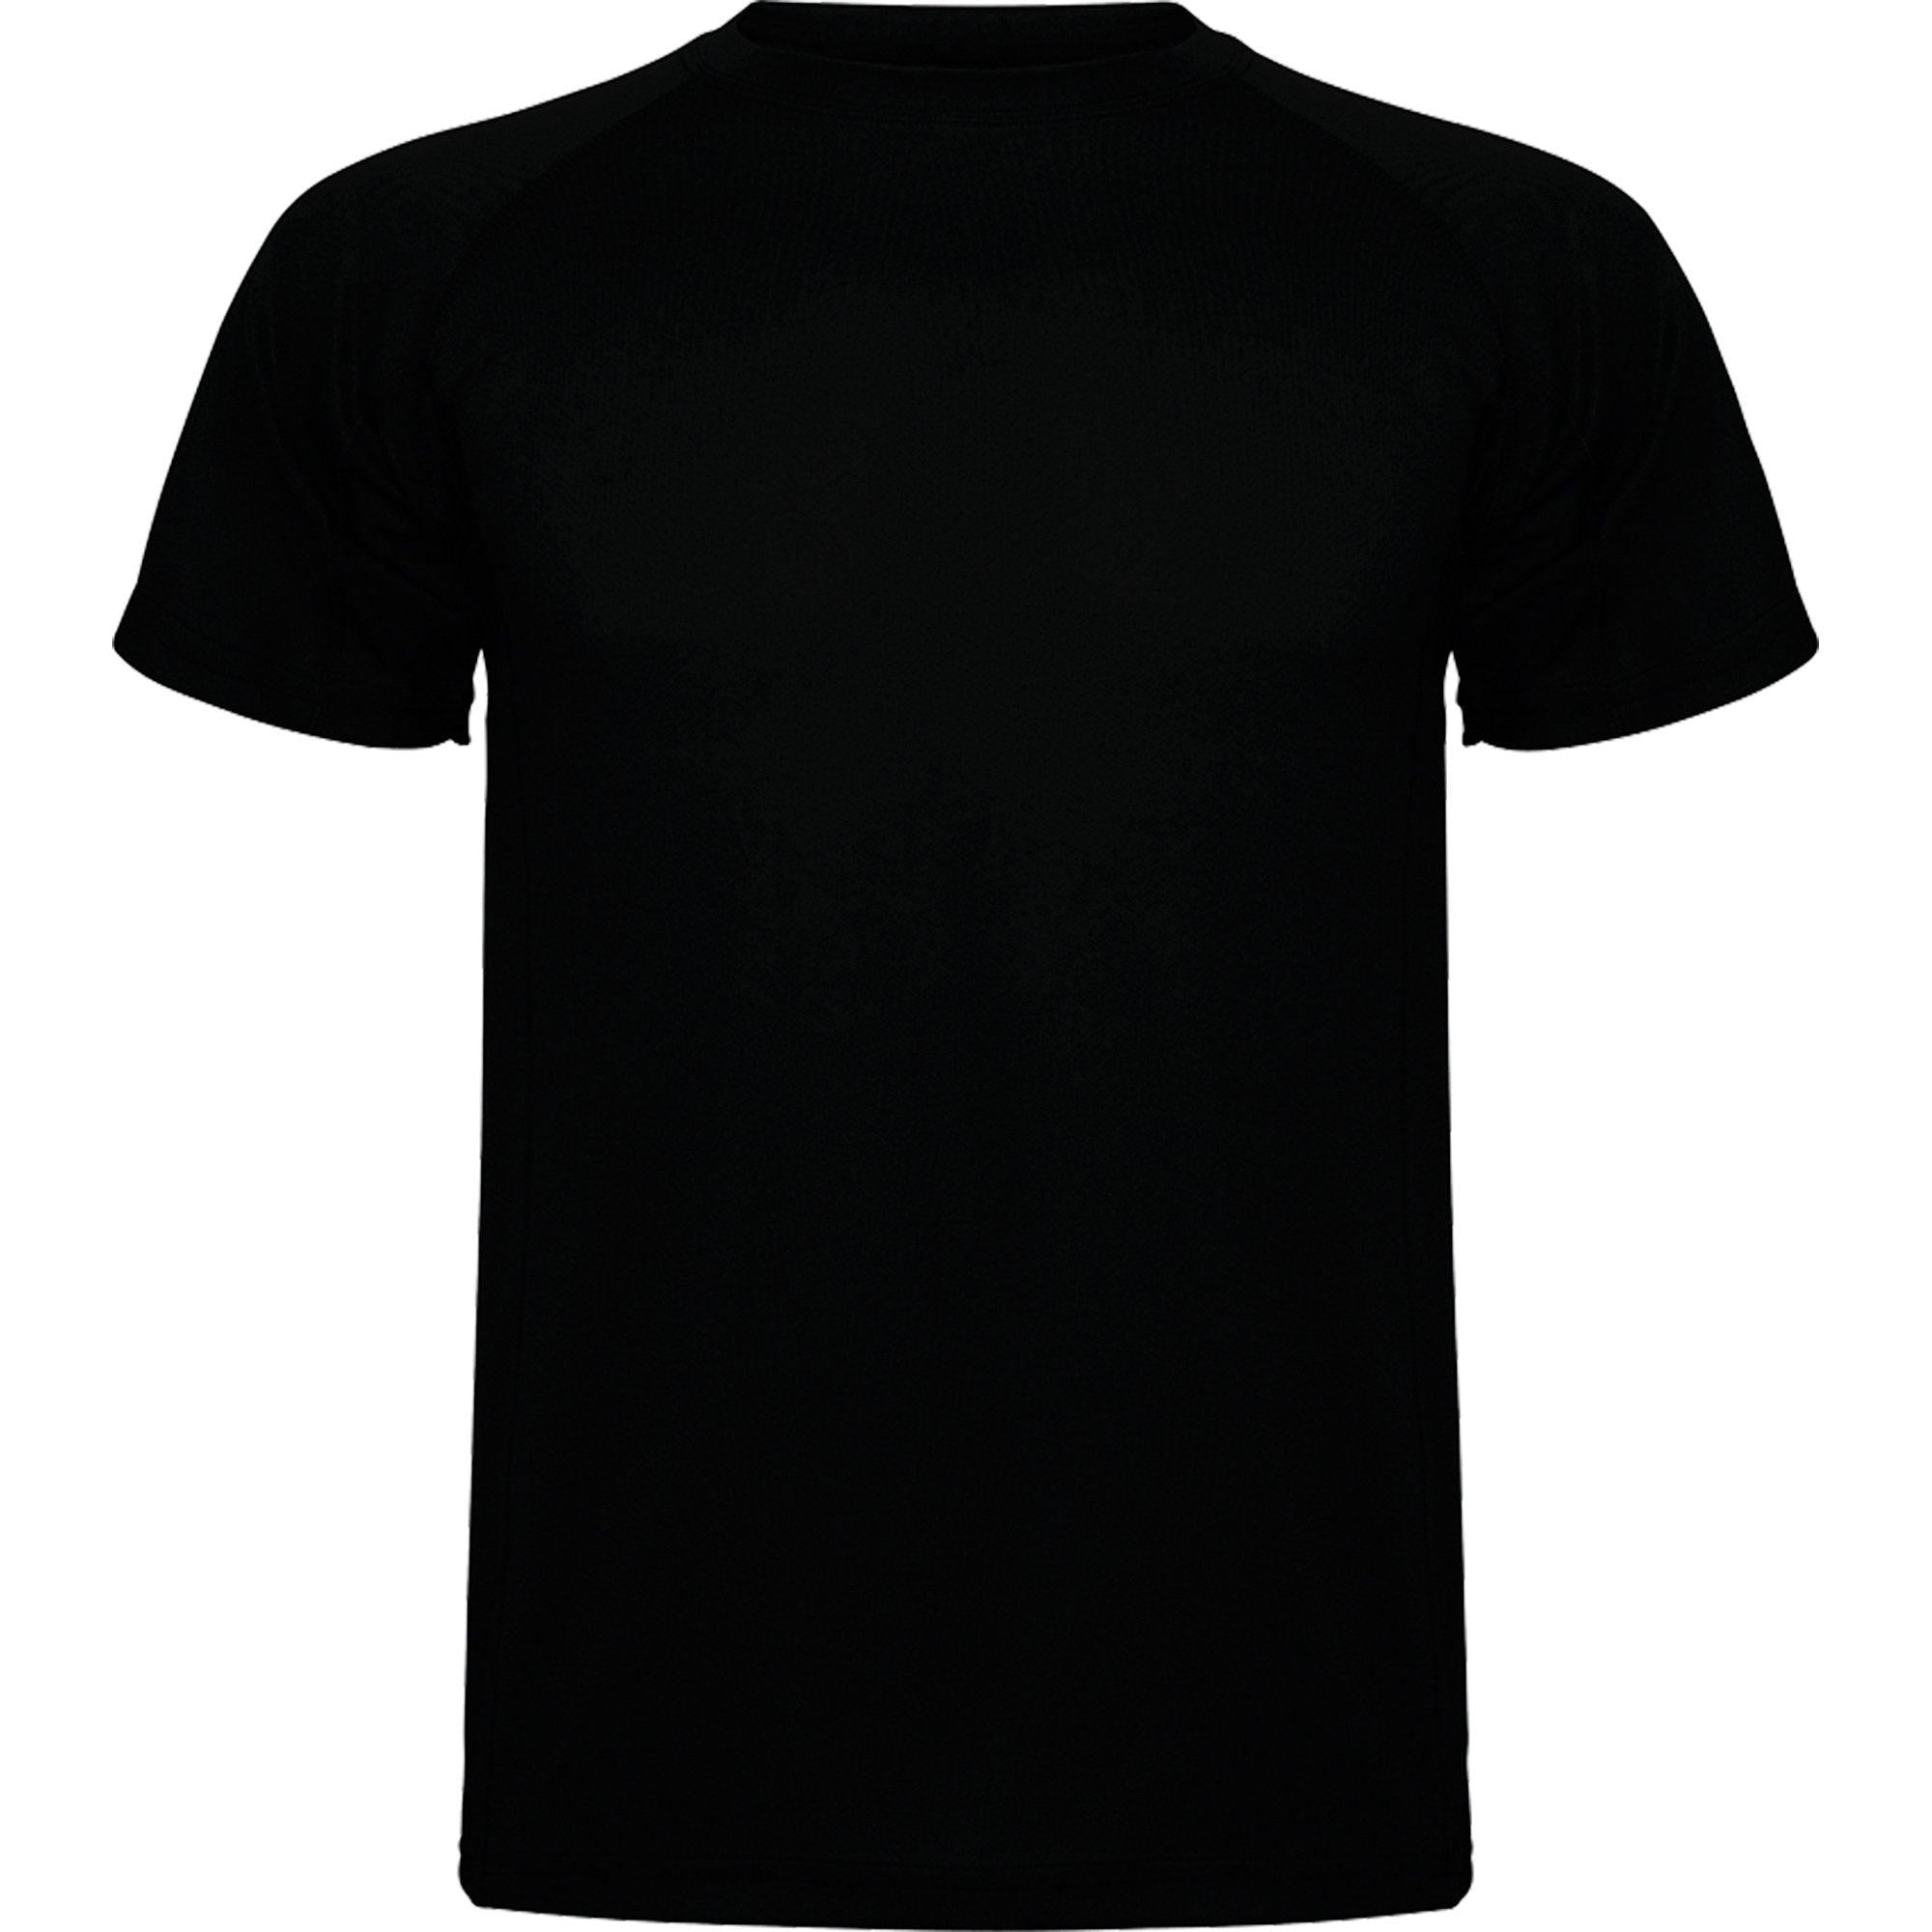 LabelFree GO T-SHIRT - Fitness T-Shirt - JA Profil 